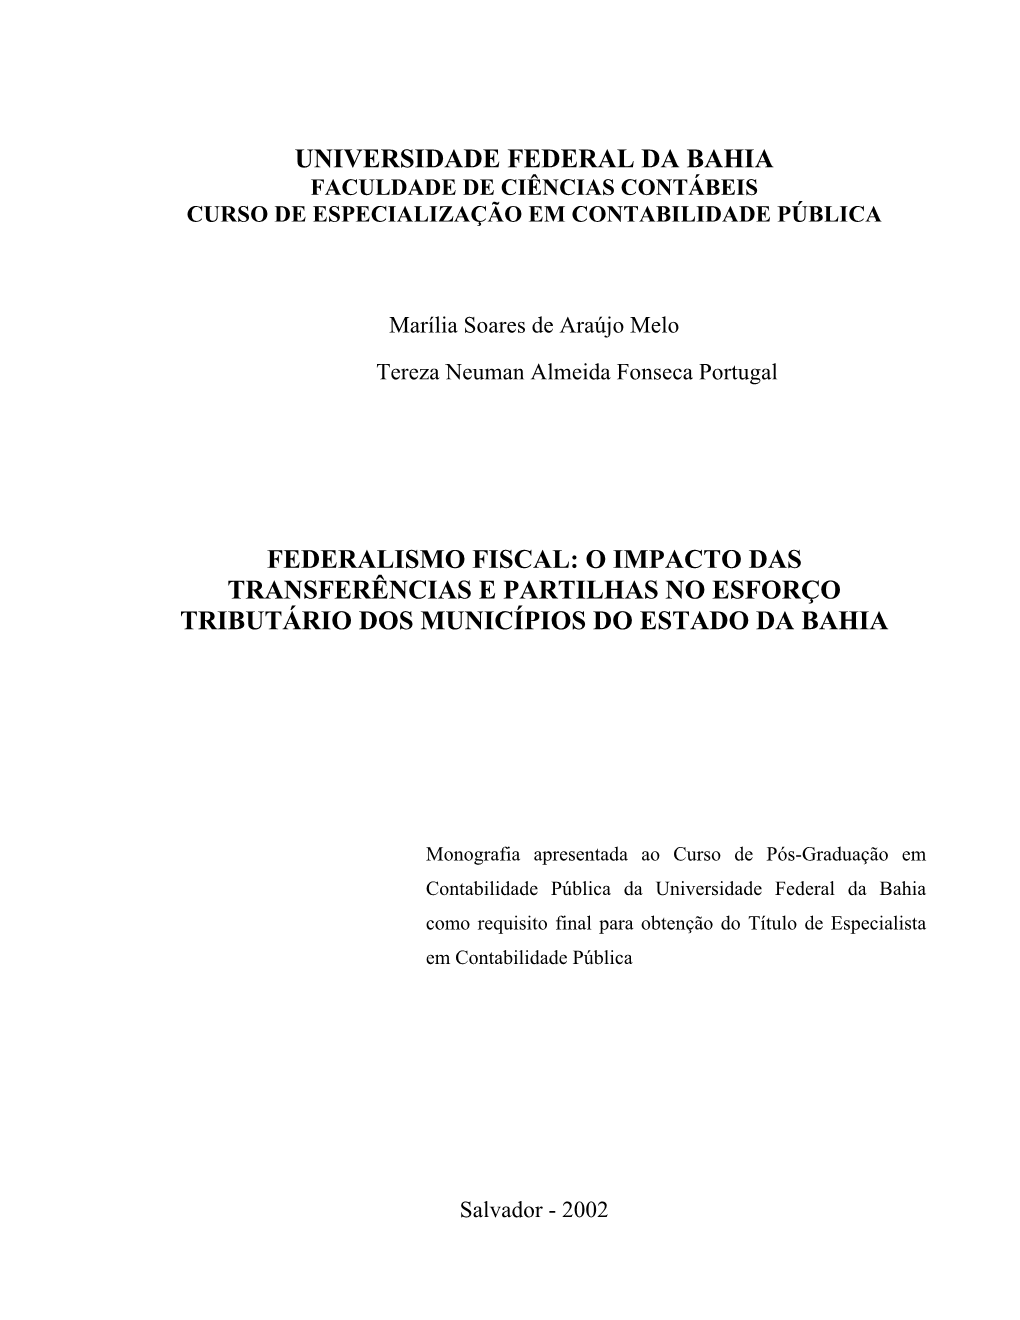 Federalismo Fiscal: O Impacto Das Transferências E Partilhas No Esforço Tributário Dos Municípios Do Estado Da Bahia